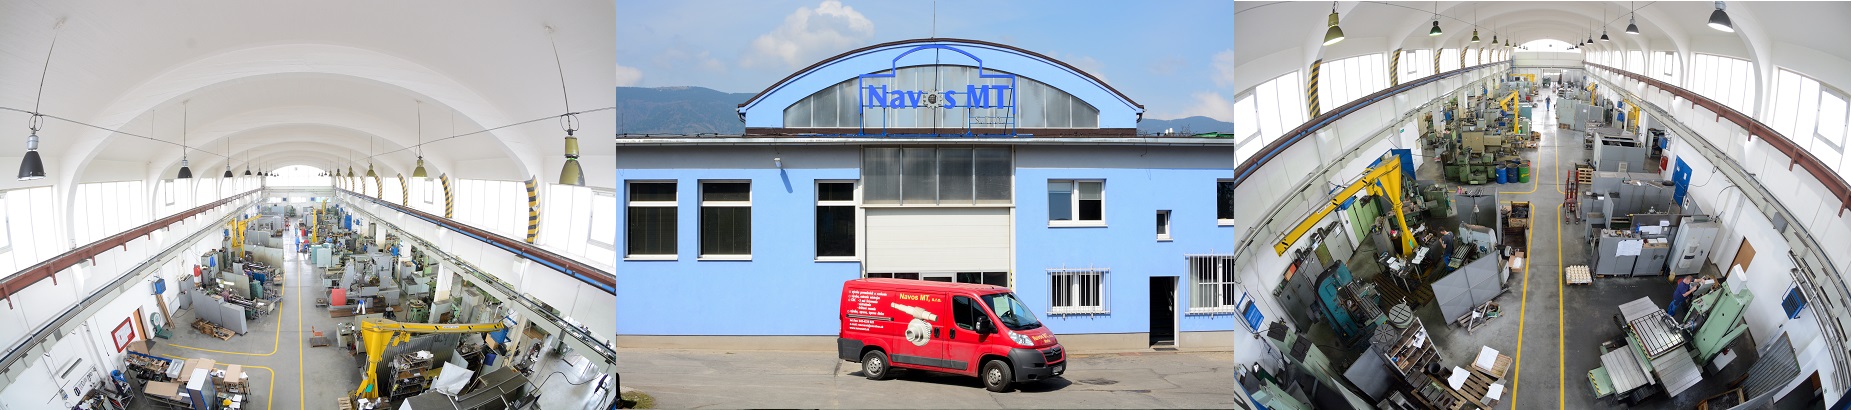 Navos MT